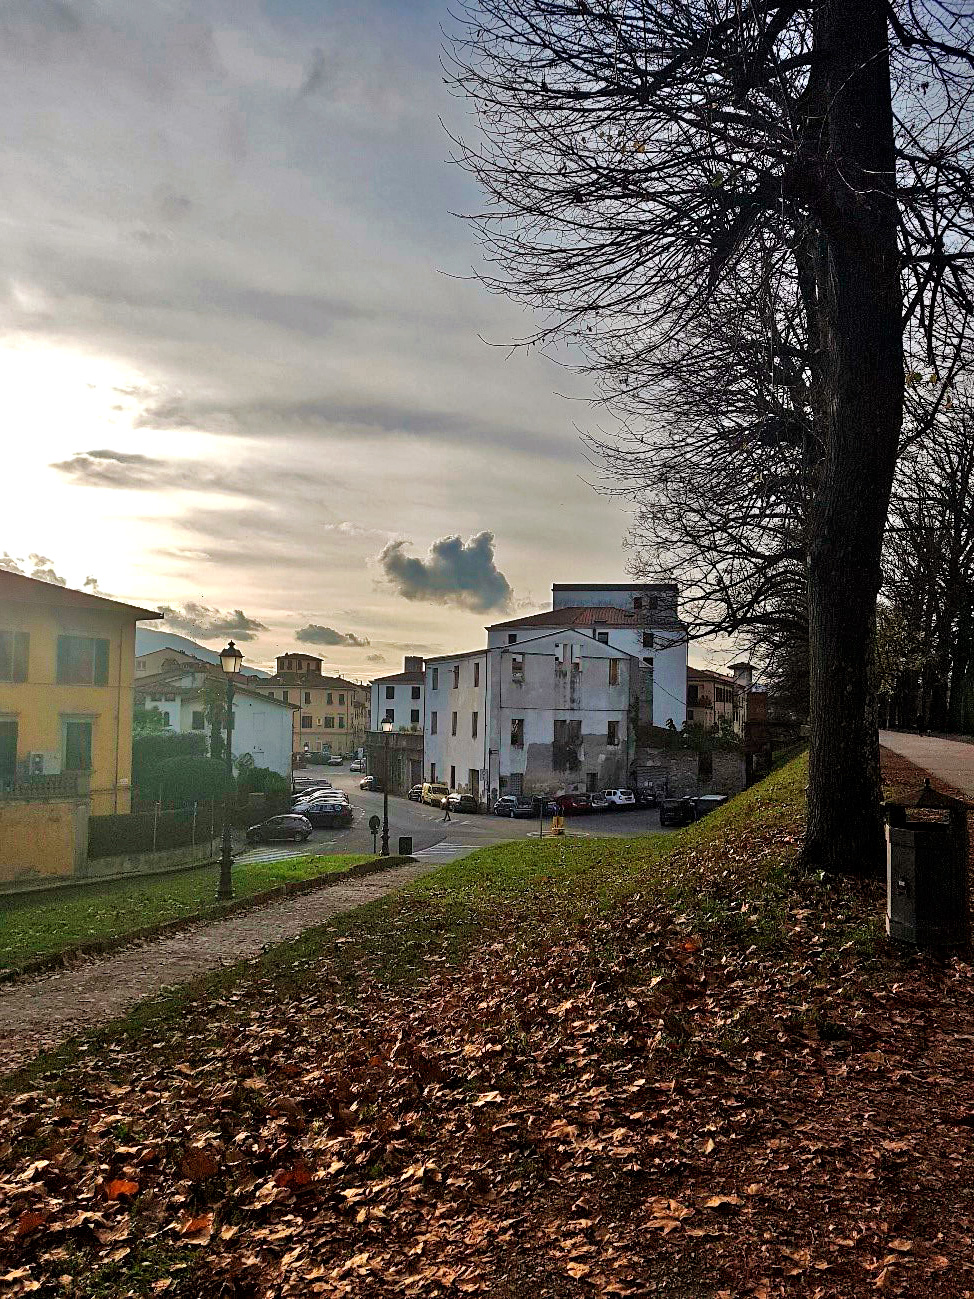 Vista da cidade de Lucca na Itália